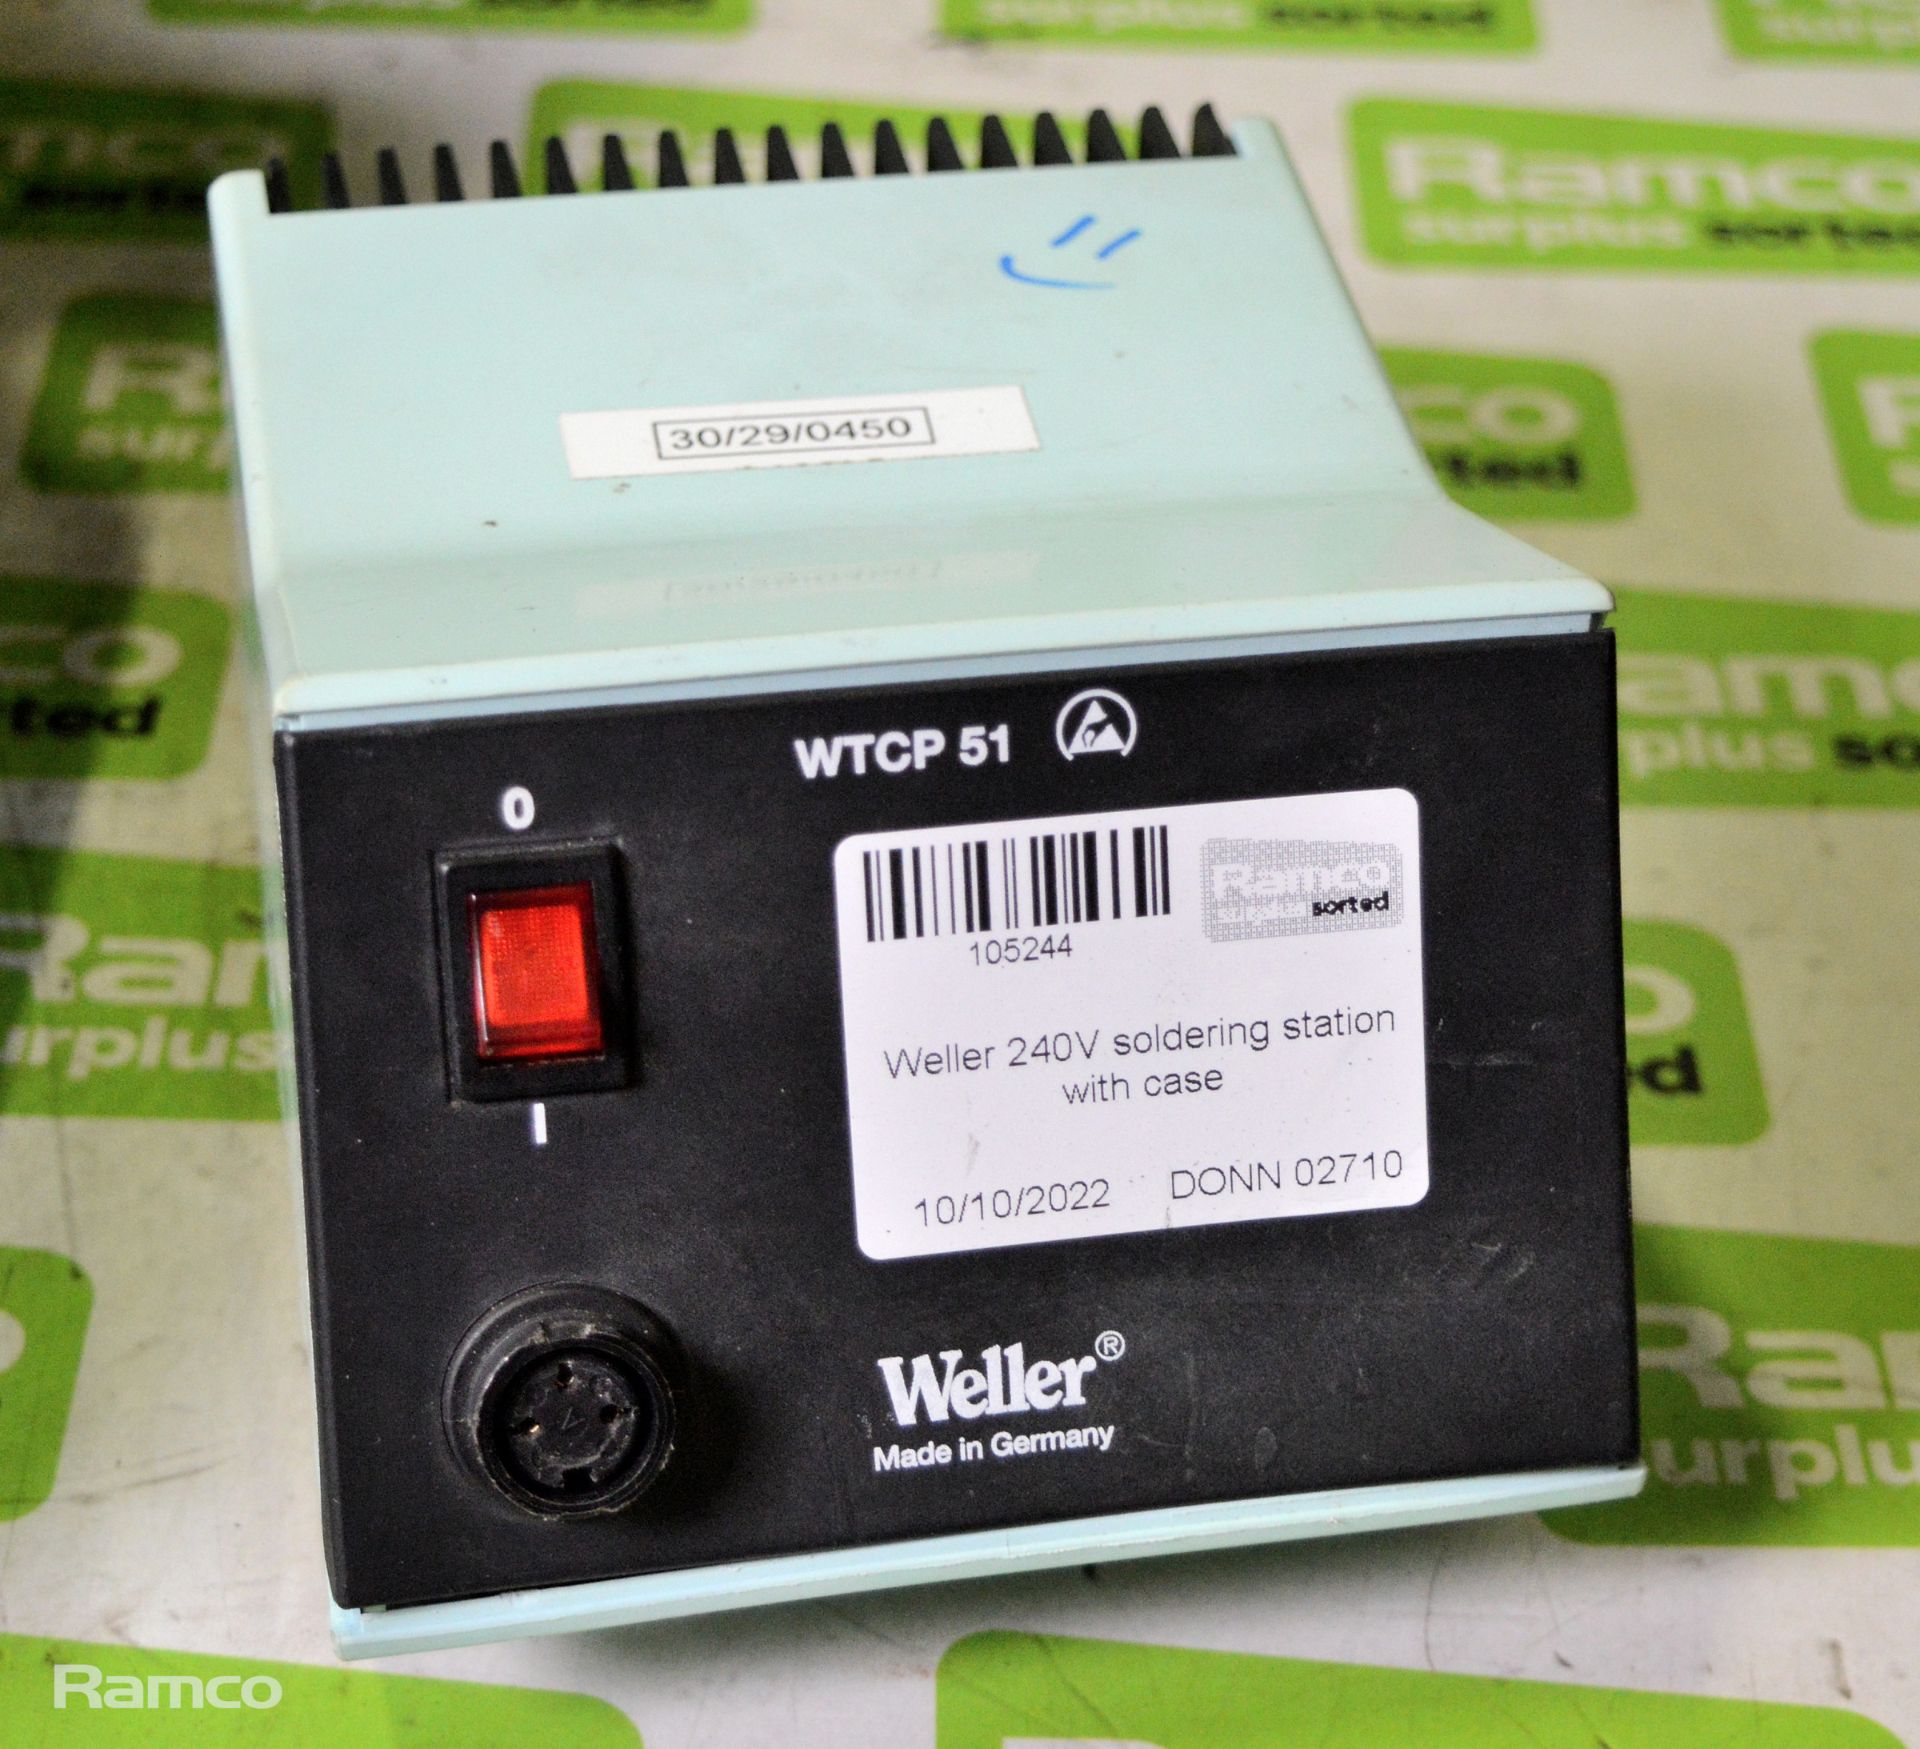 Weller 240V soldering station with case - Image 2 of 4